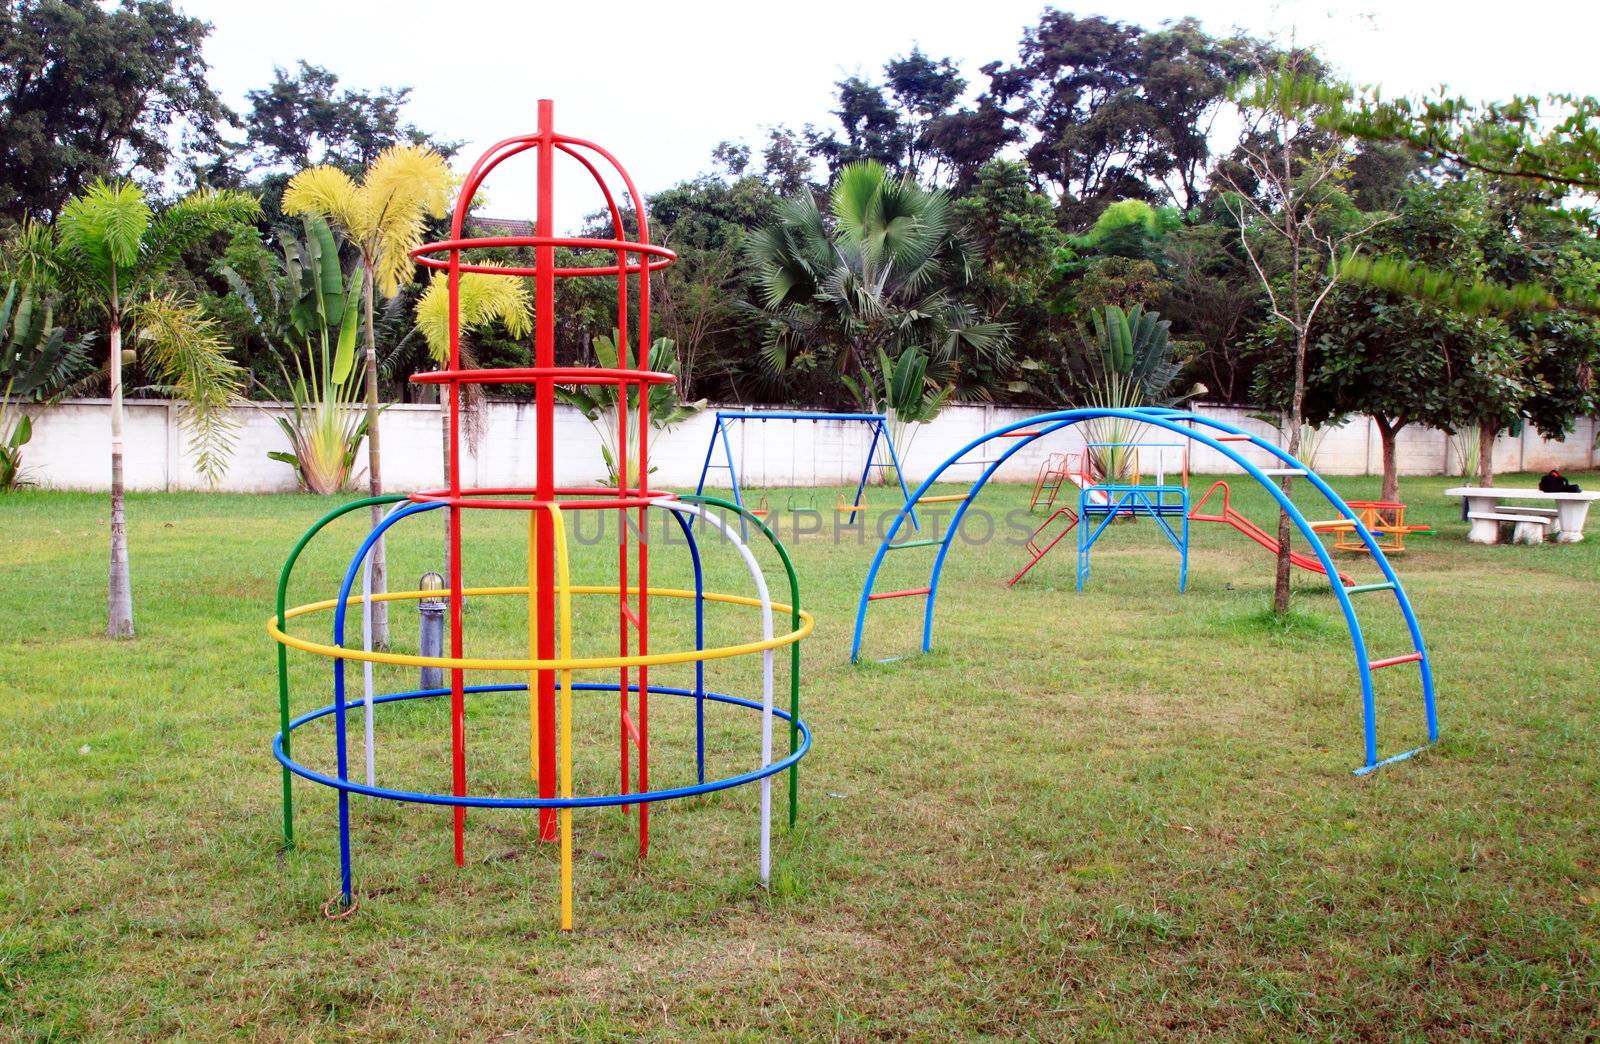 Playground without children by geargodz